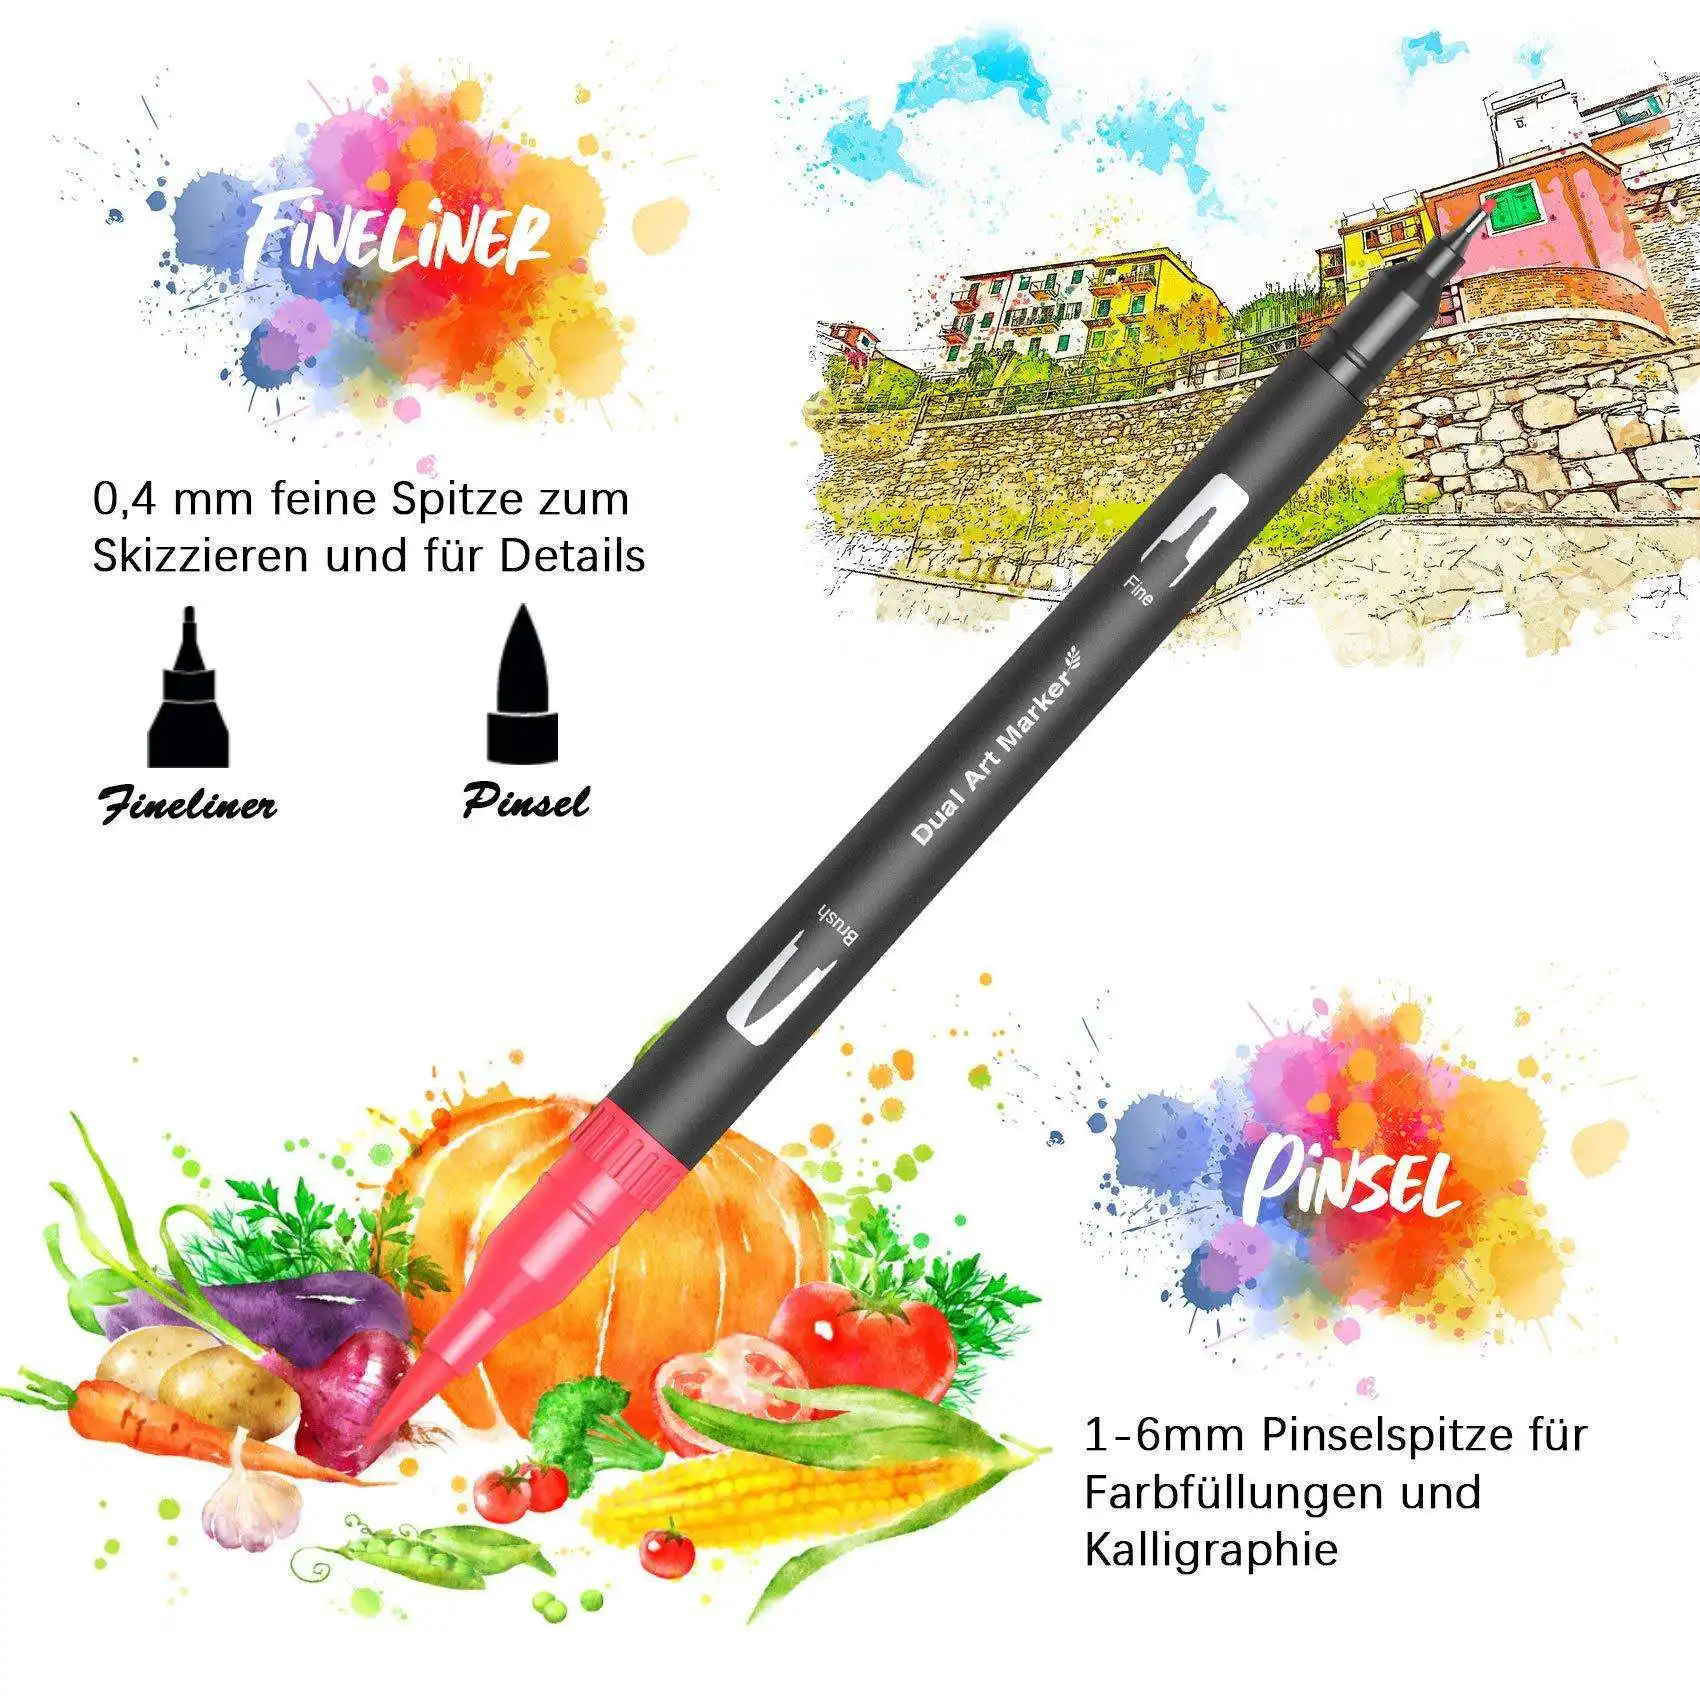 أقلام تلوين ملونة بألوان زائدة أقلام تلوين ملونة بألوان زائدة أقلام تلوين ملونة أقلام تلوين ملونة أقلام تلوين ملونة